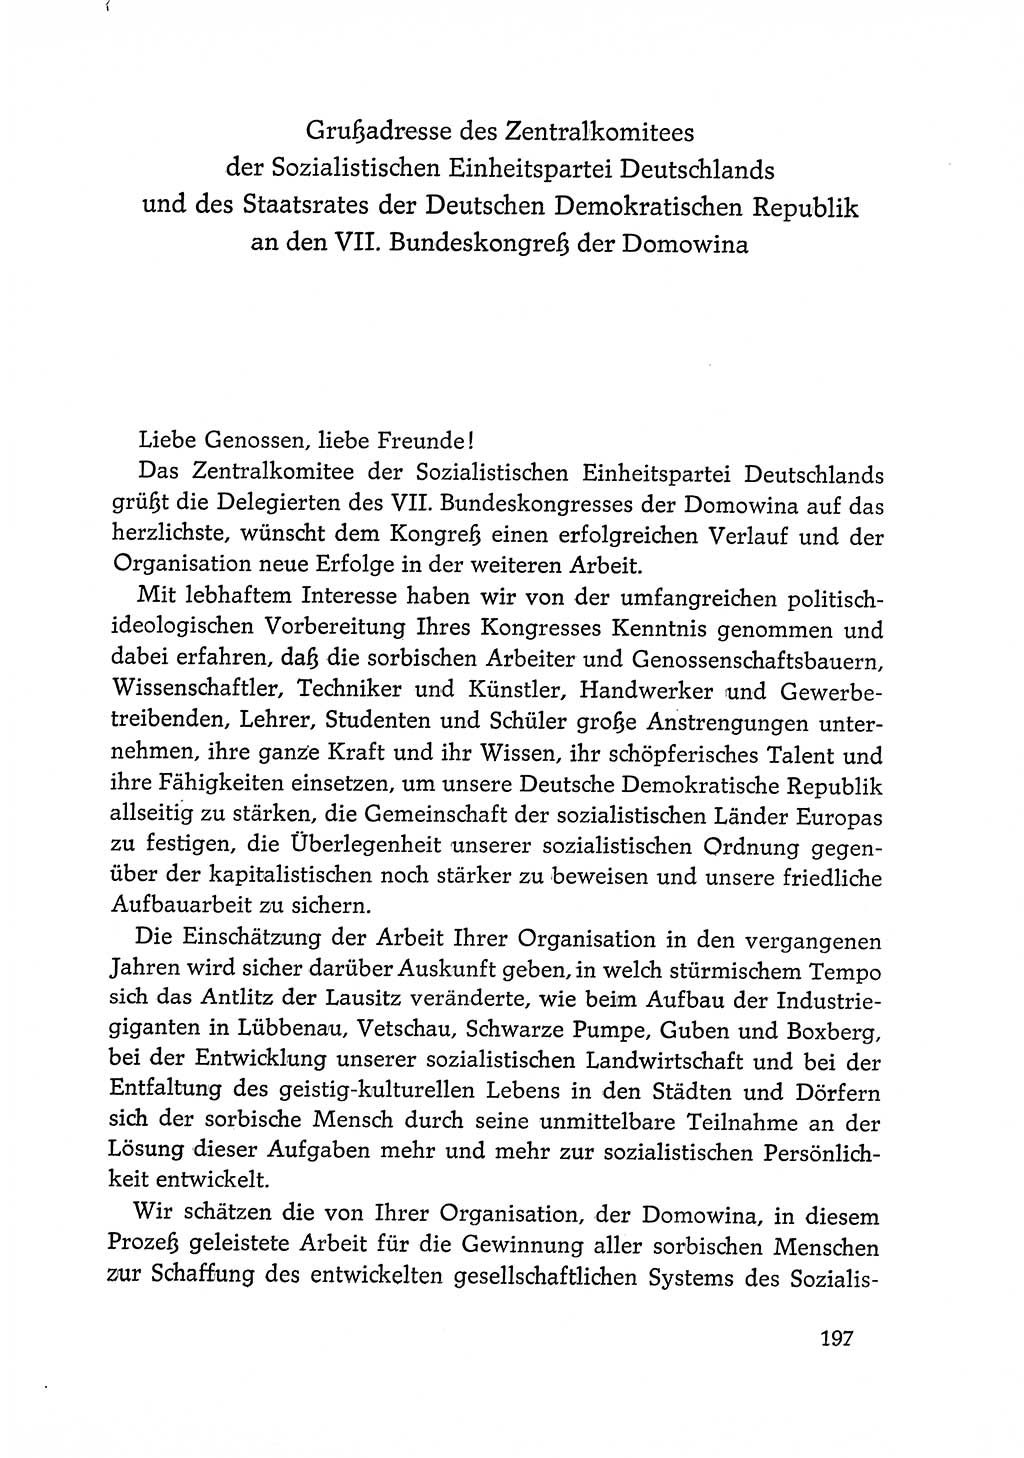 Dokumente der Sozialistischen Einheitspartei Deutschlands (SED) [Deutsche Demokratische Republik (DDR)] 1968-1969, Seite 197 (Dok. SED DDR 1968-1969, S. 197)